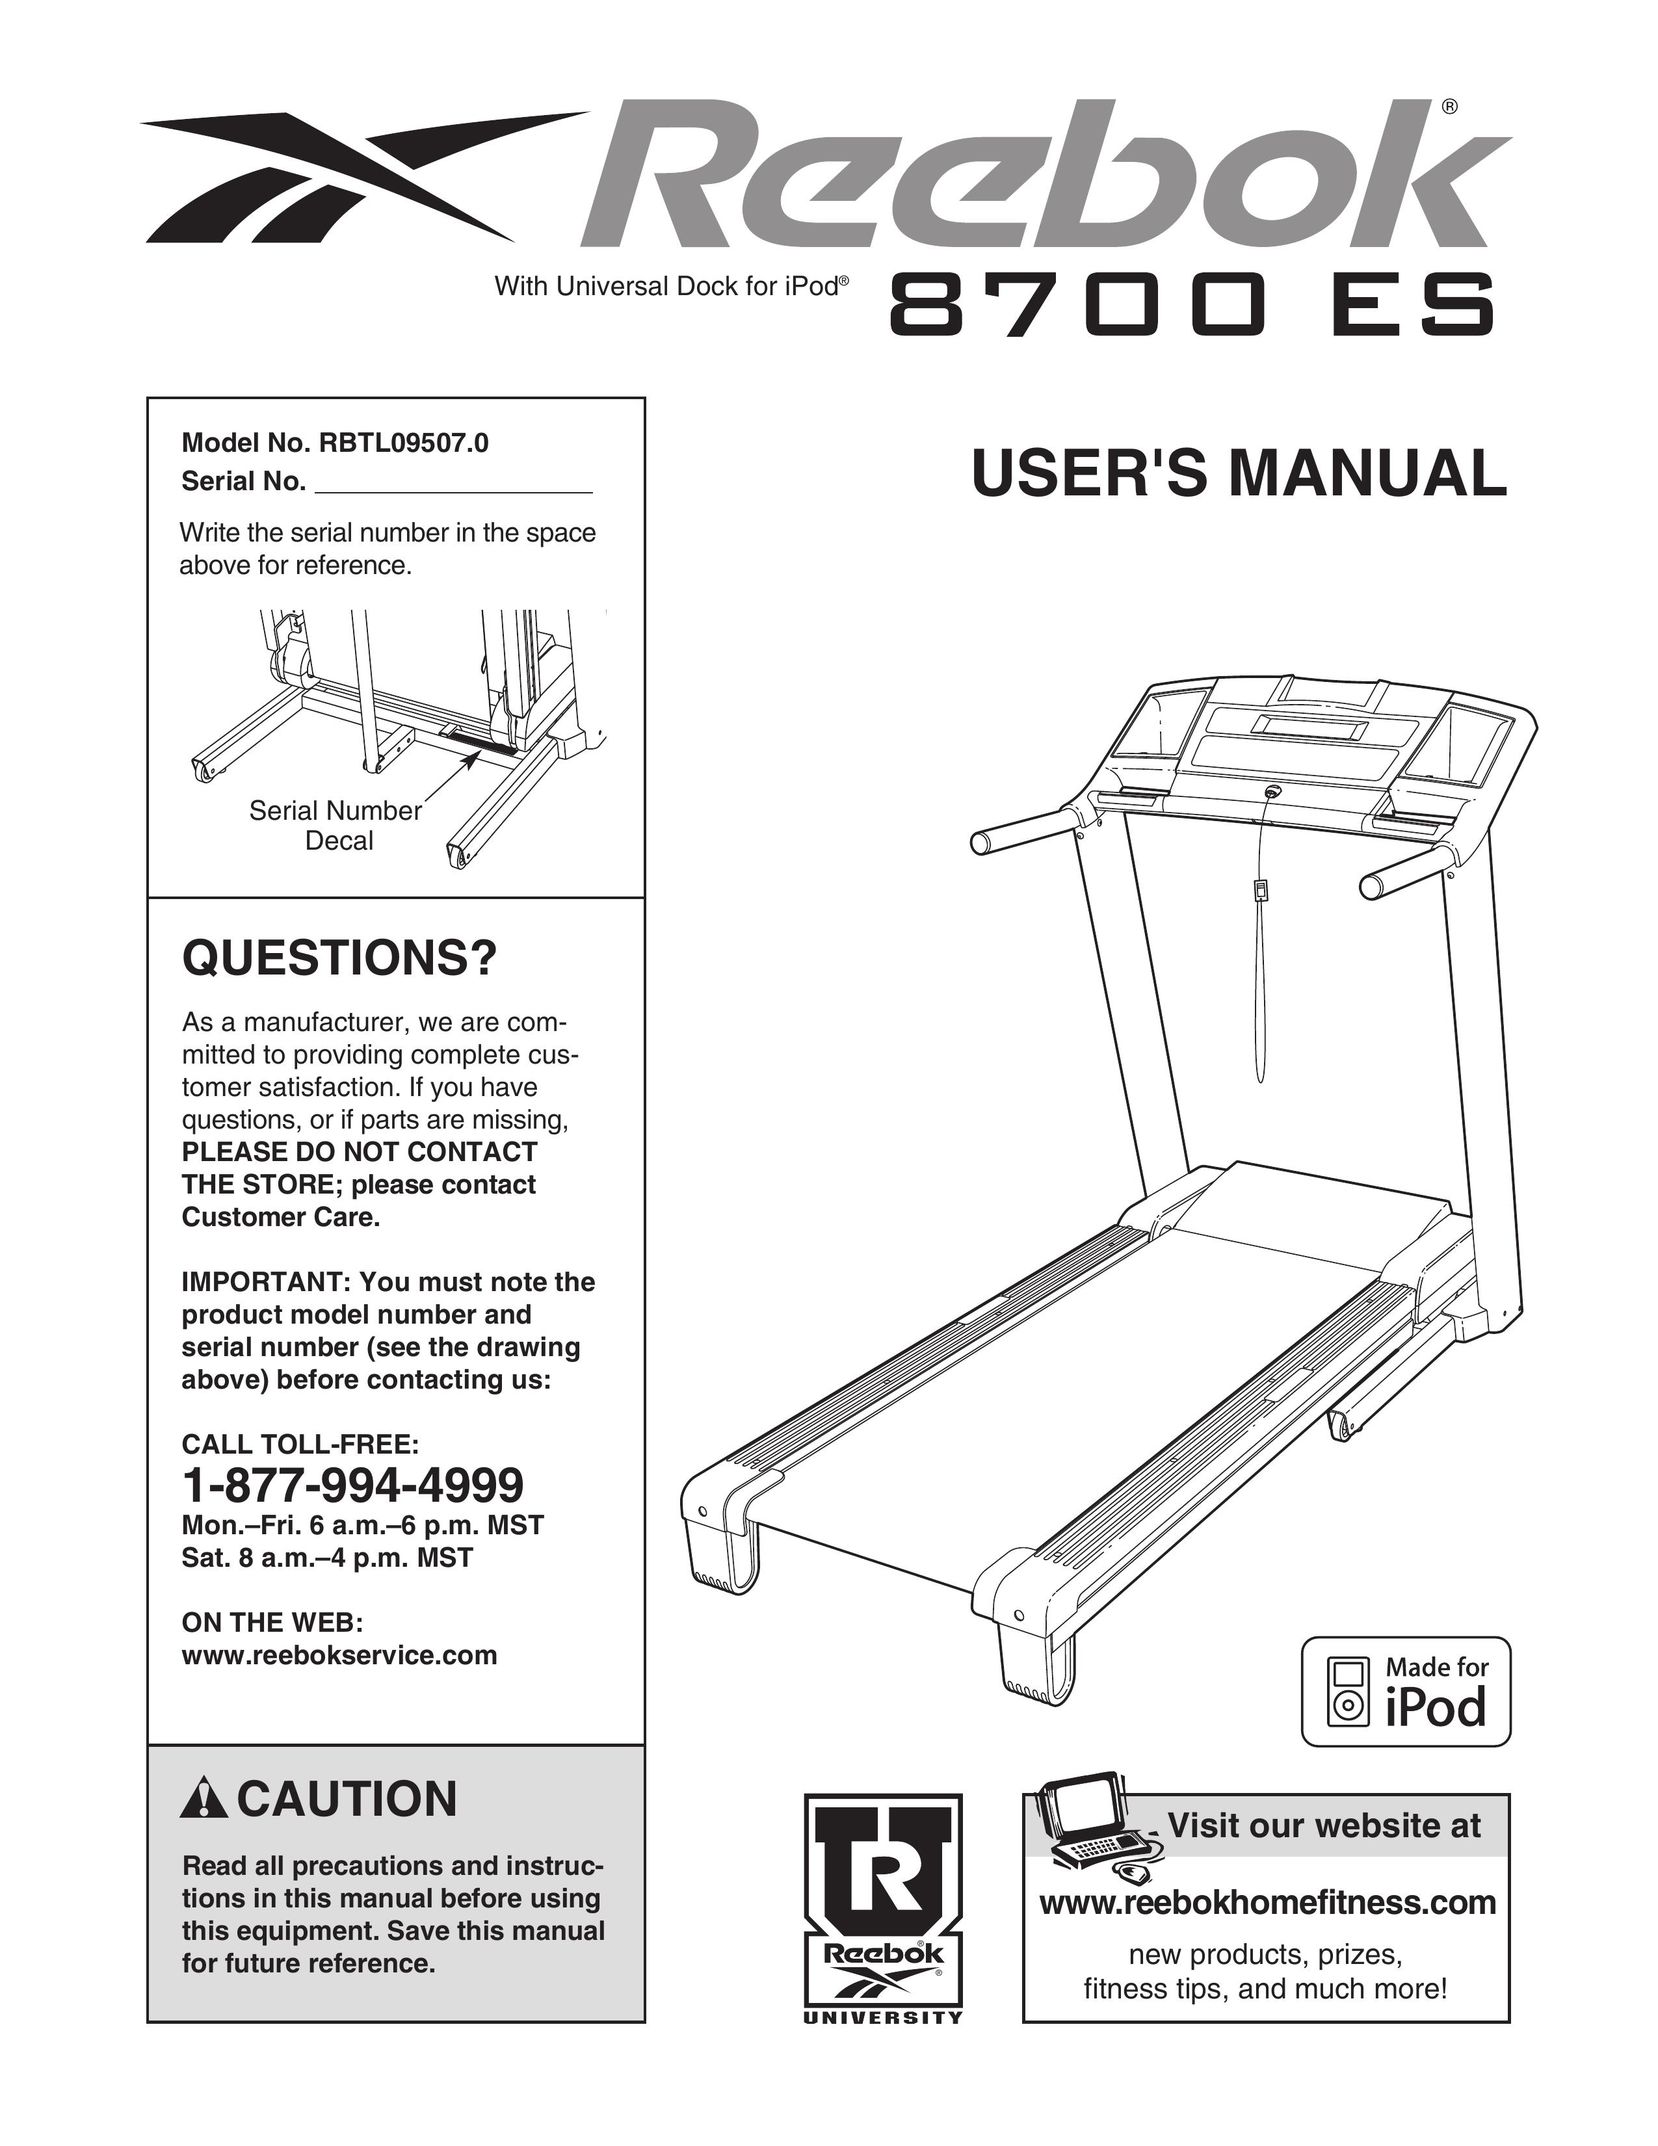 Reebok Fitness RBTL09507.0 Treadmill User Manual